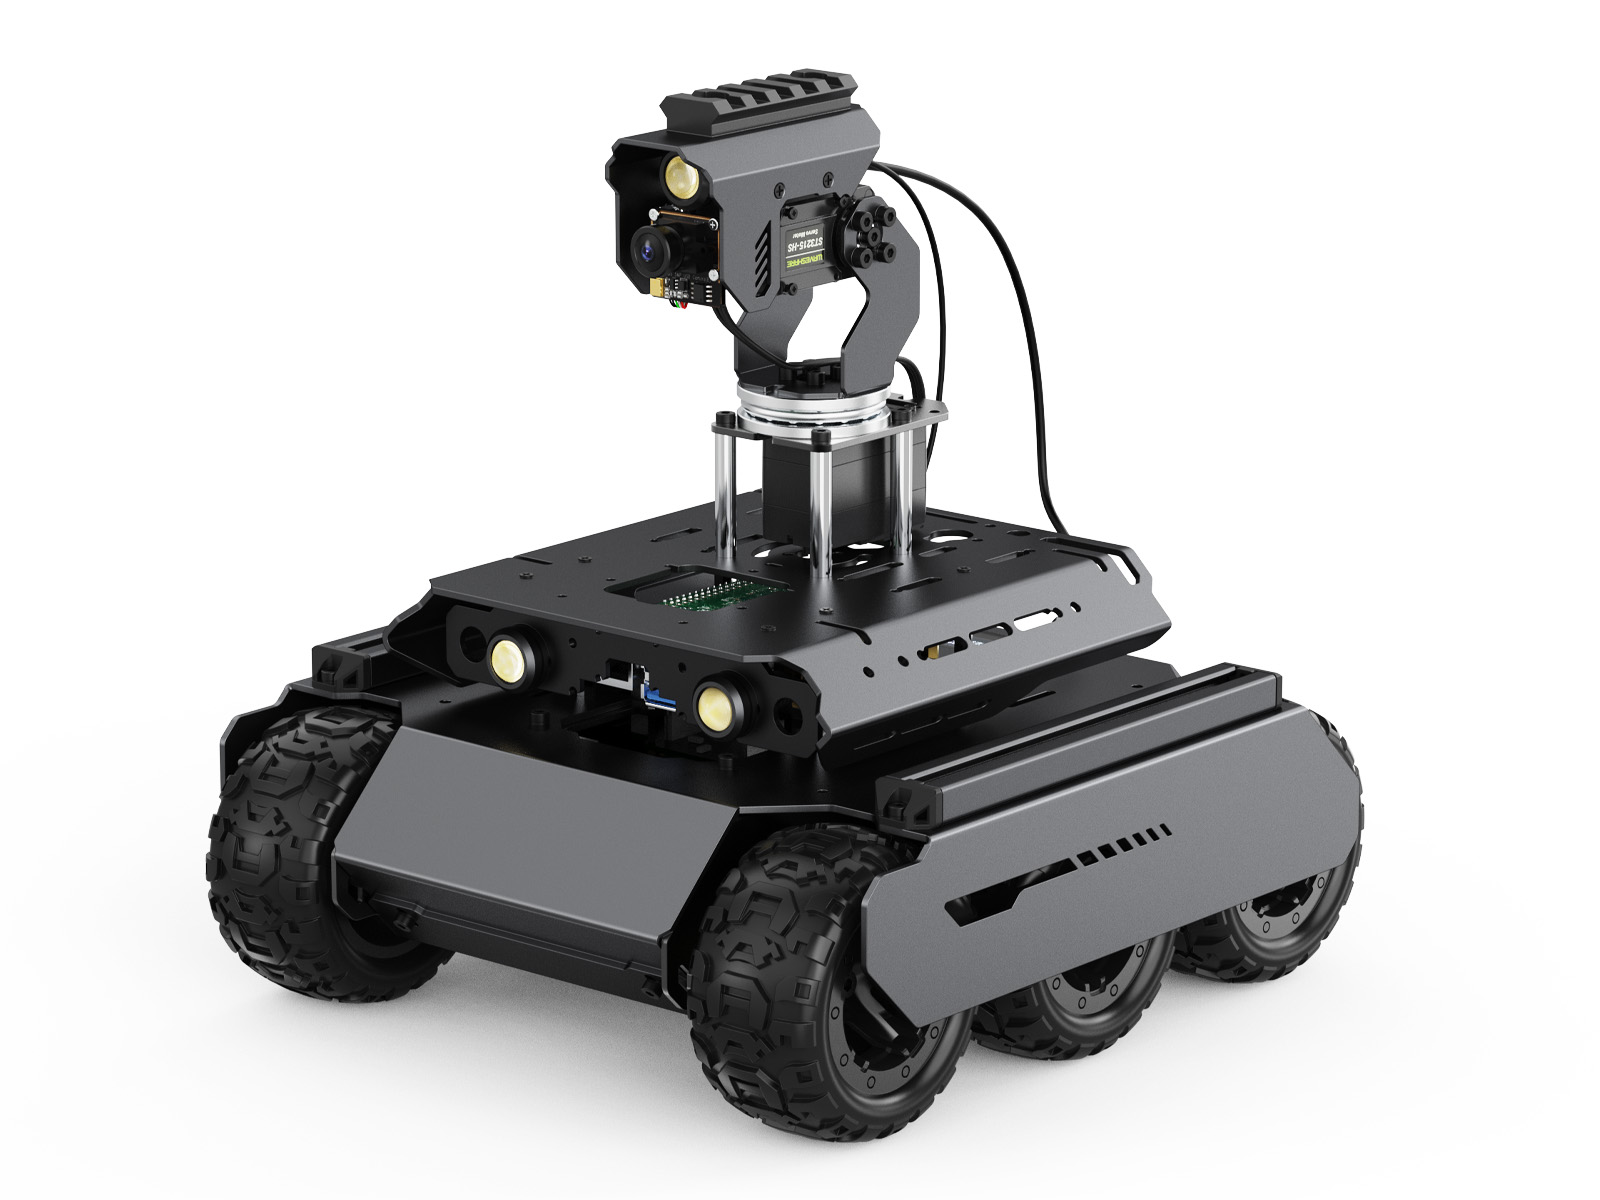 UGV Rover四驱六轮开源移动机器人 双脑架构 机器视觉 交互式教程 高性能灵活可扩展 金属架构 搭载360°全向云台 含树莓派4B